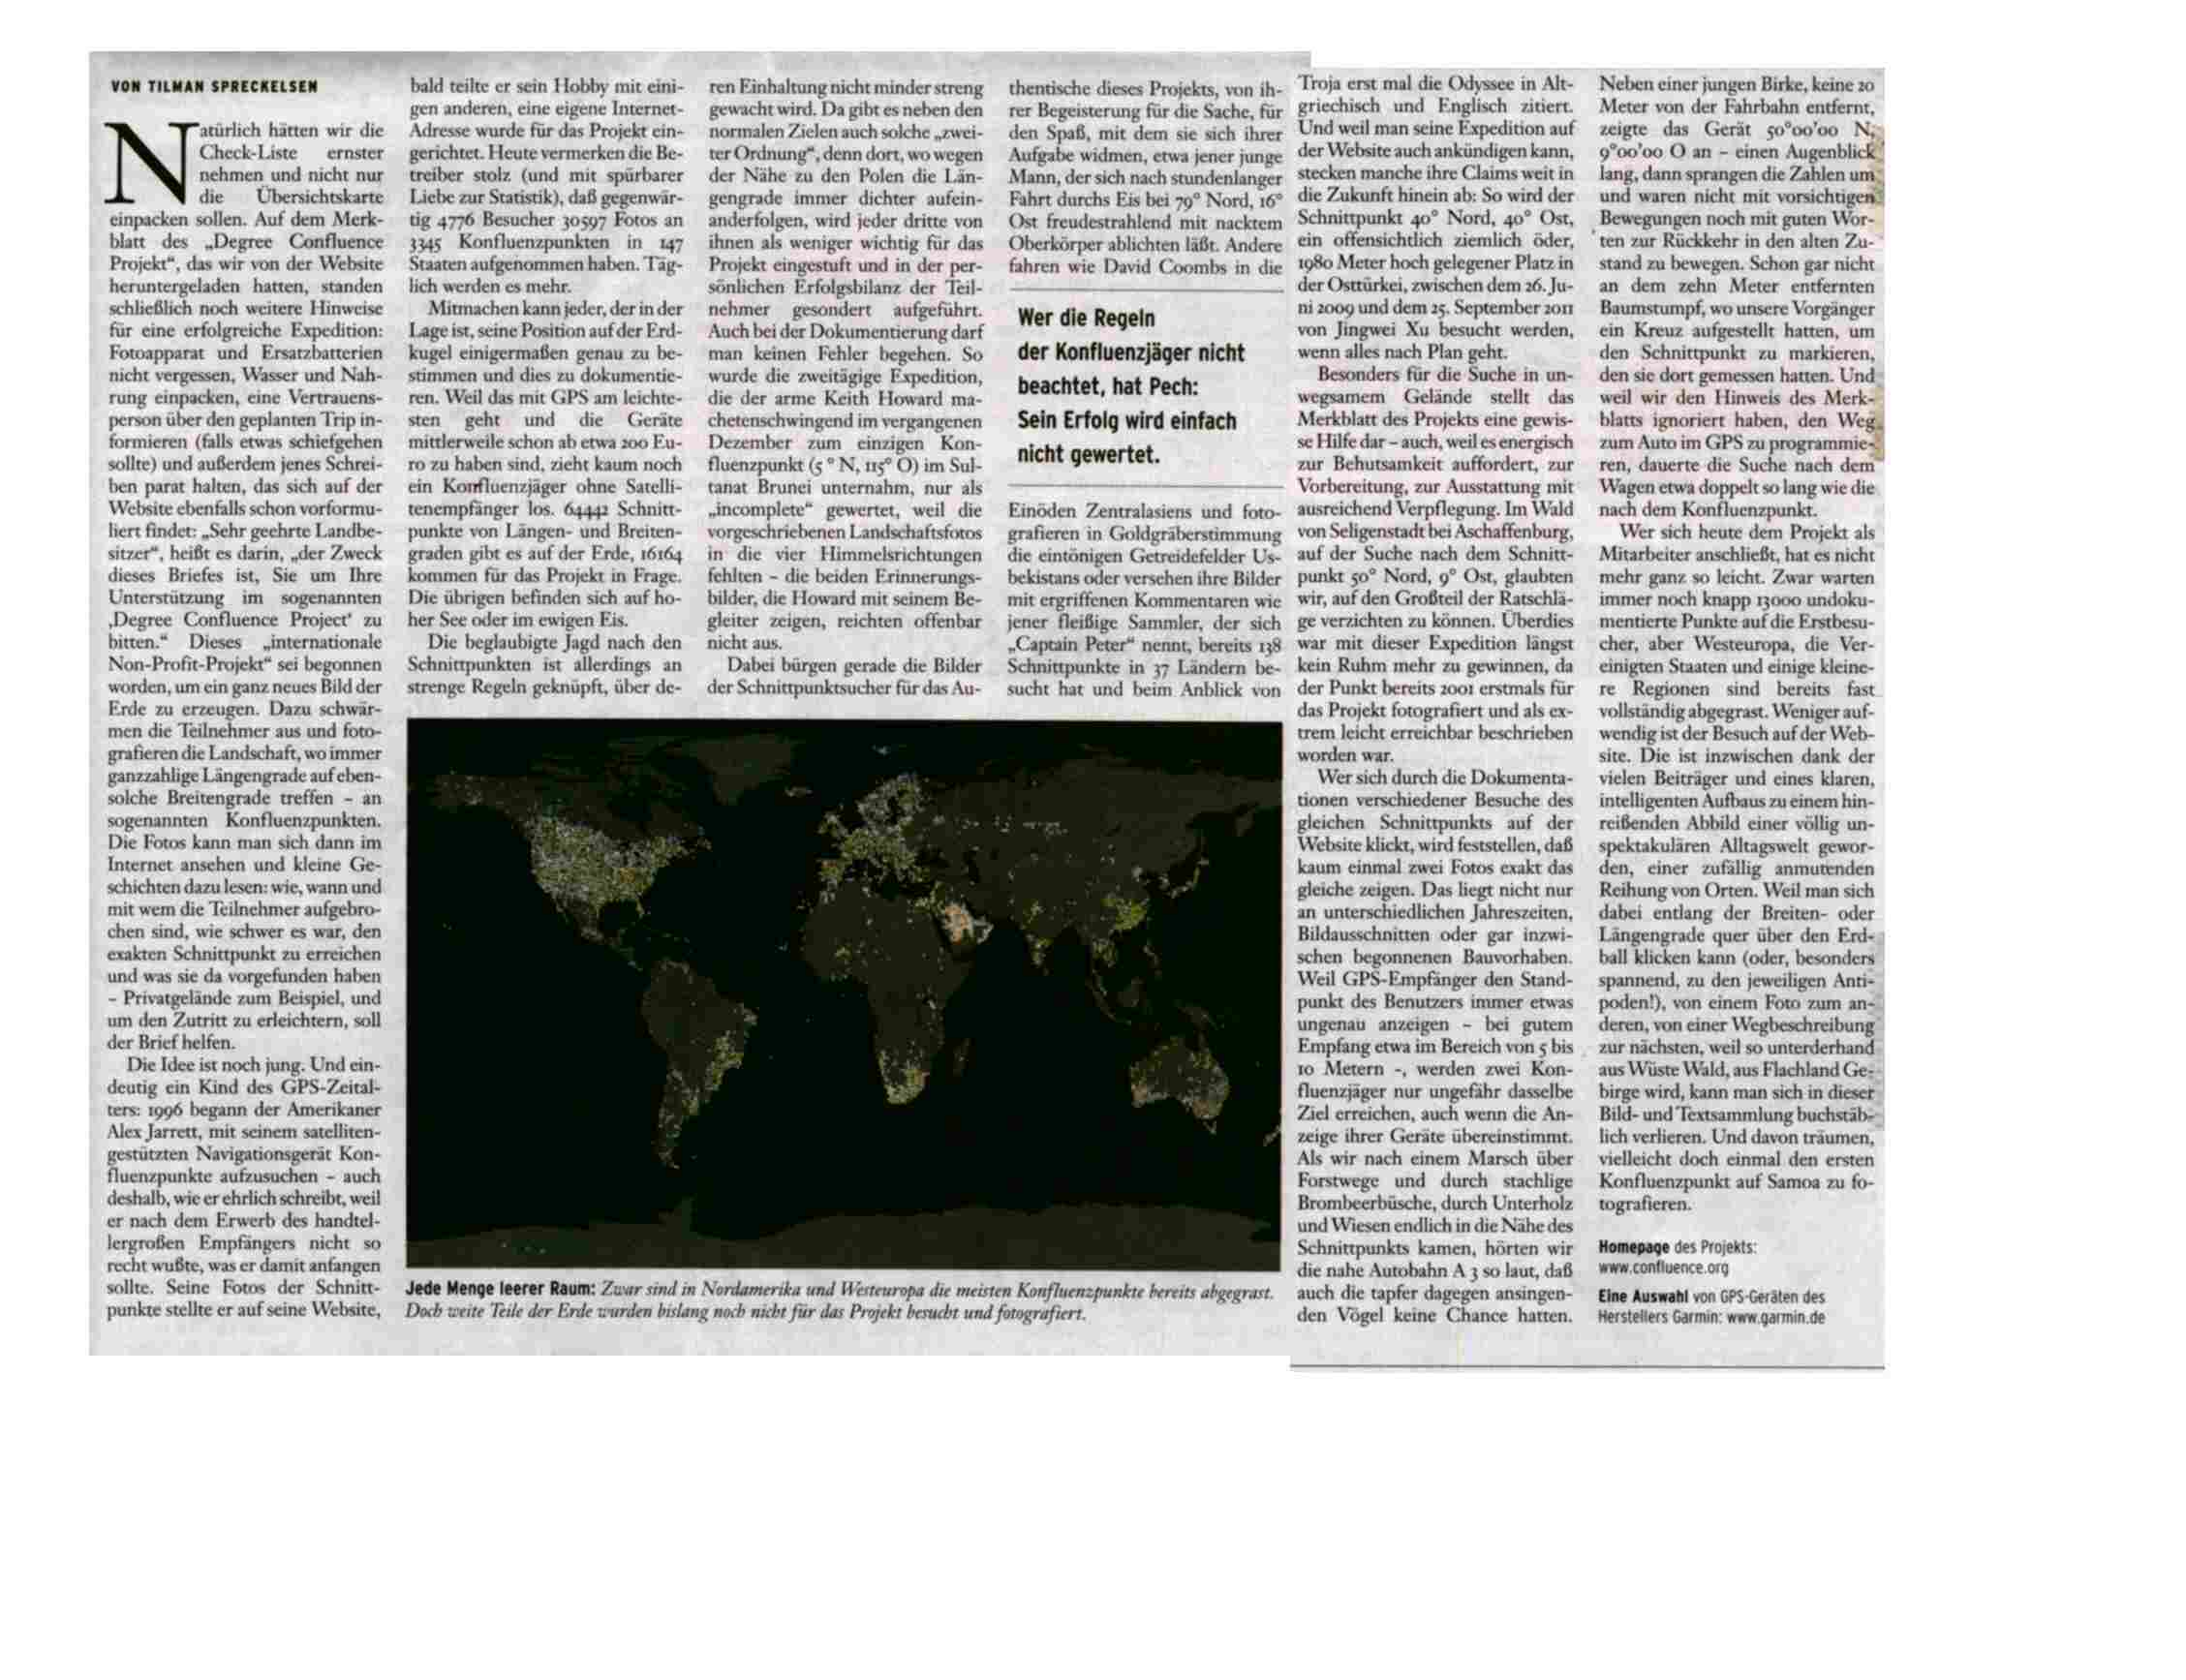 Frankfurter Allgemeine Sonntagszeitung article